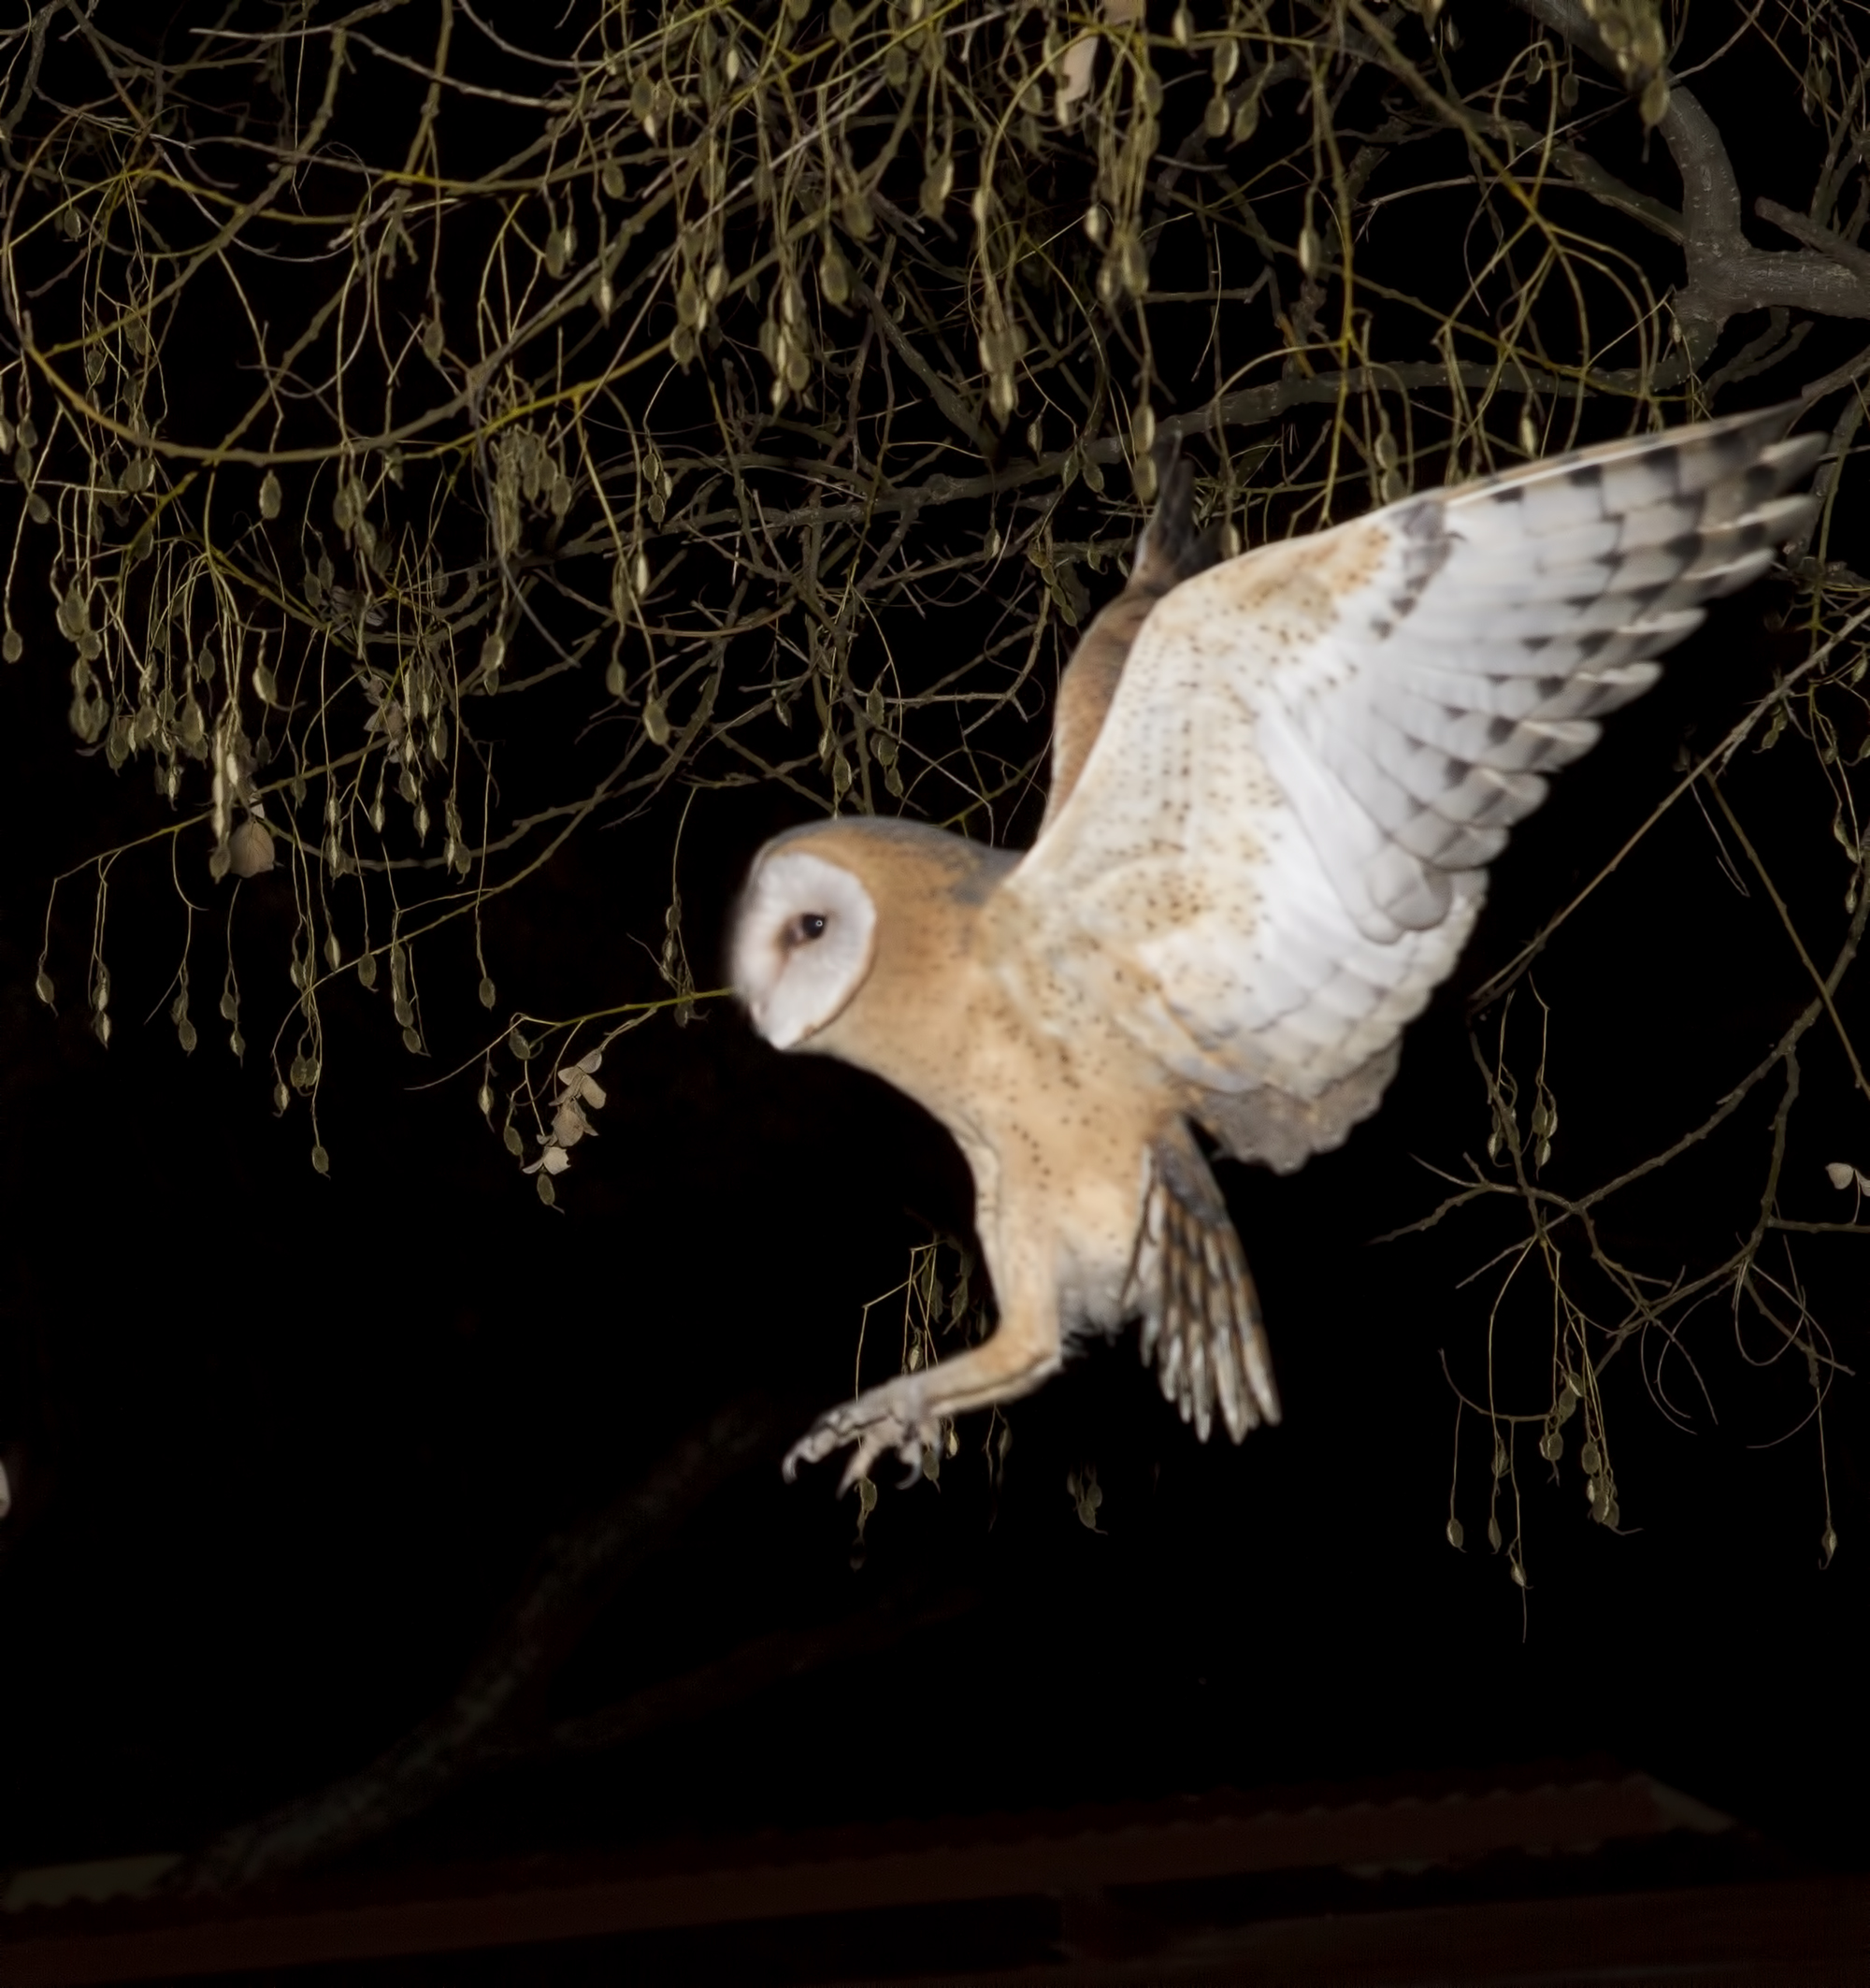 Western Barn Owl Flying Wings Open Rodents Prey